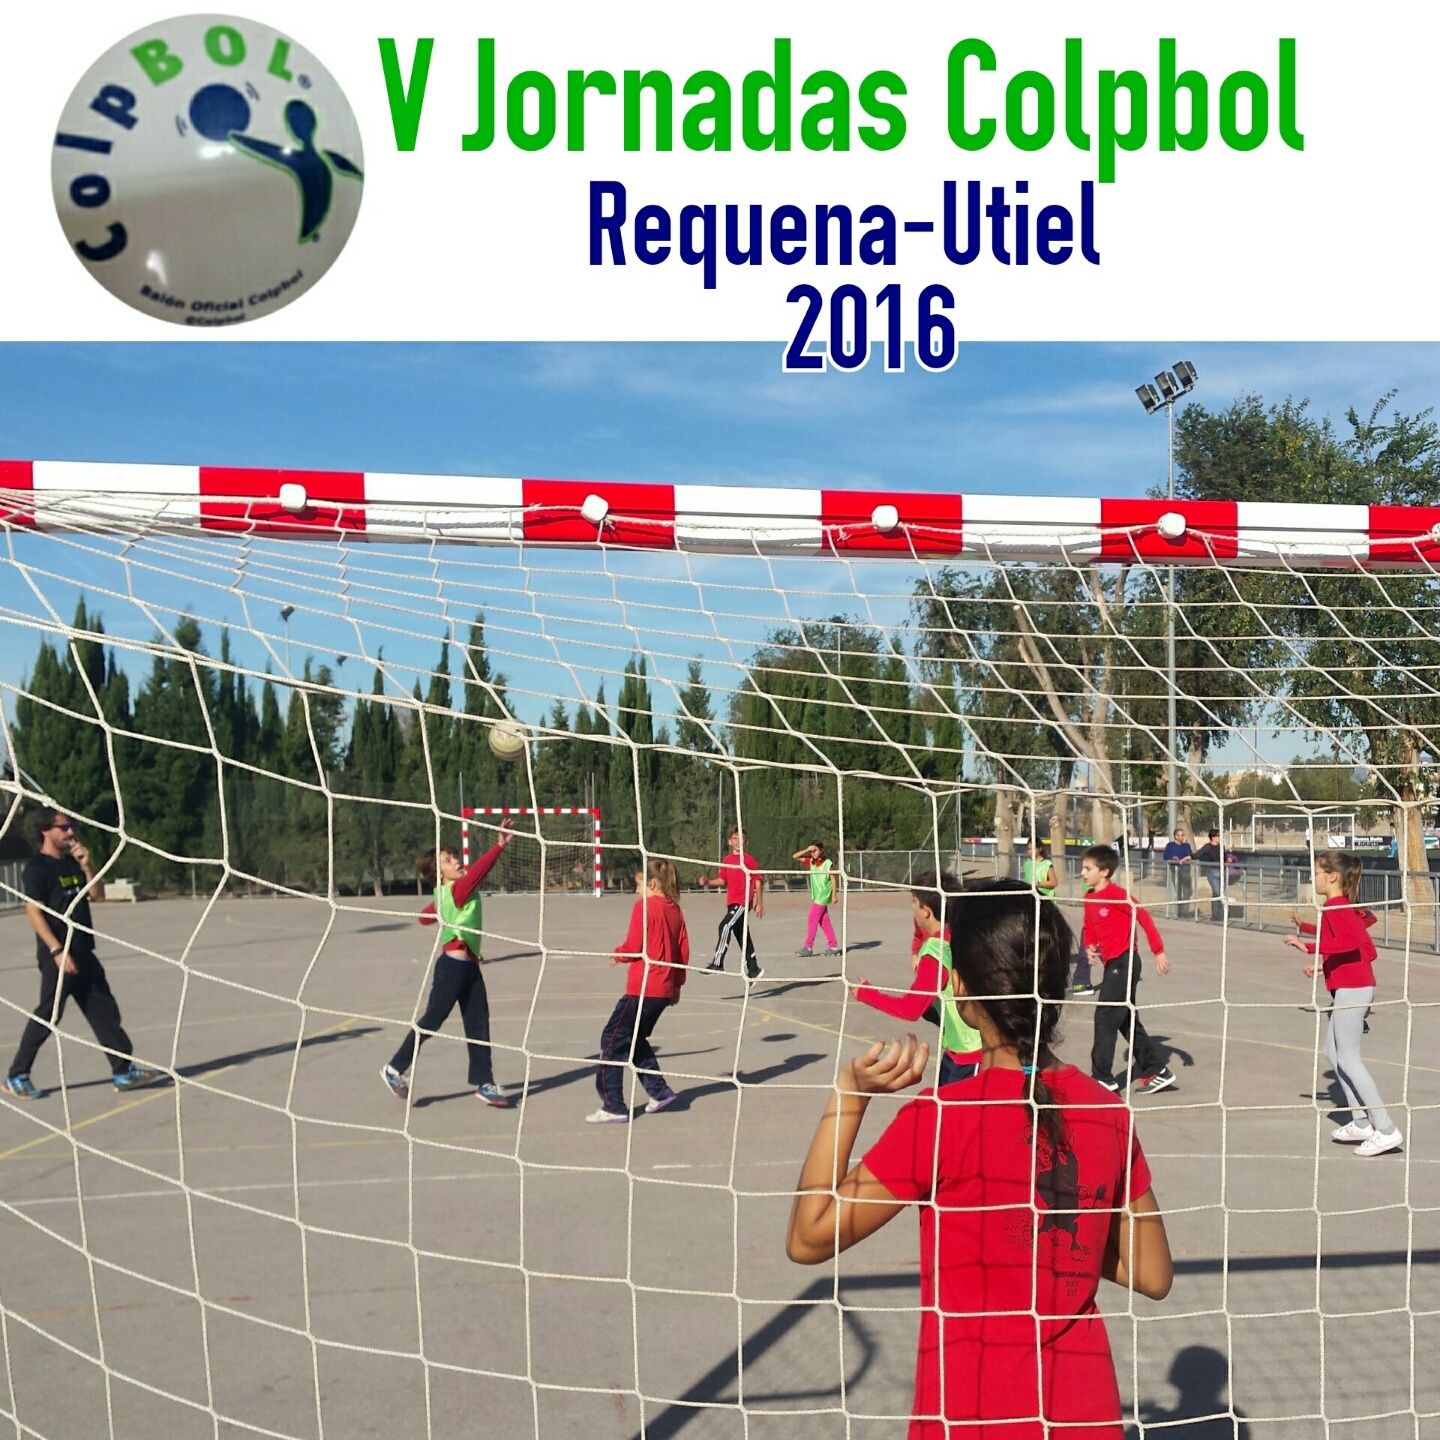 La comarca Requena-Utiel celebra les V Jornades Comarcals de Colpbol